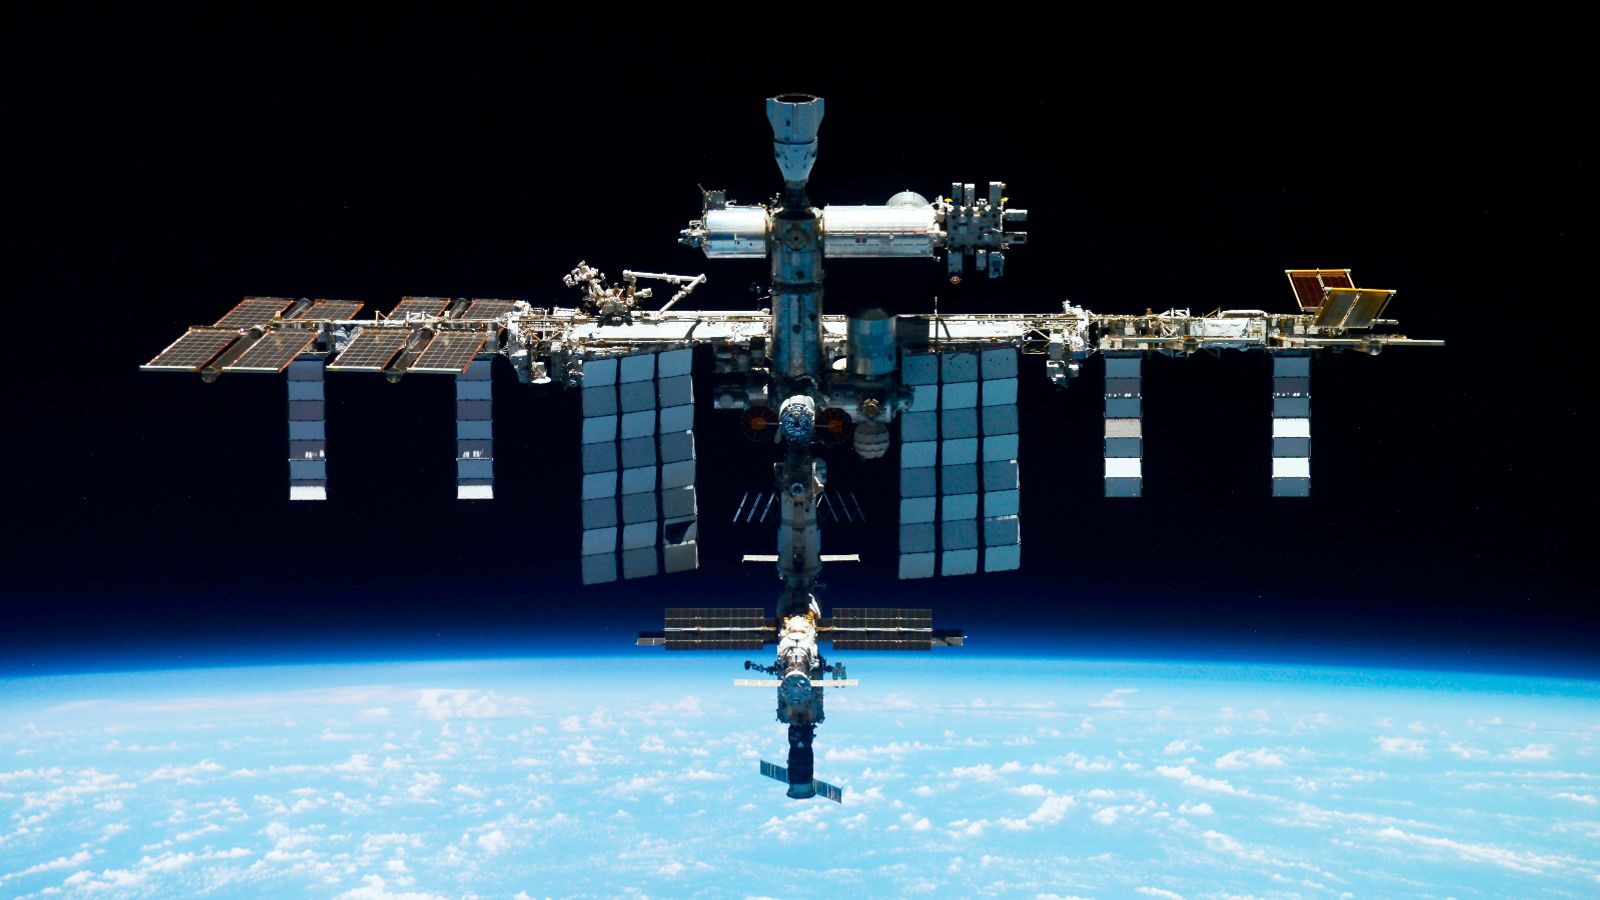 Седемчленният екипаж и станцията не са в опасност според Роскосмос